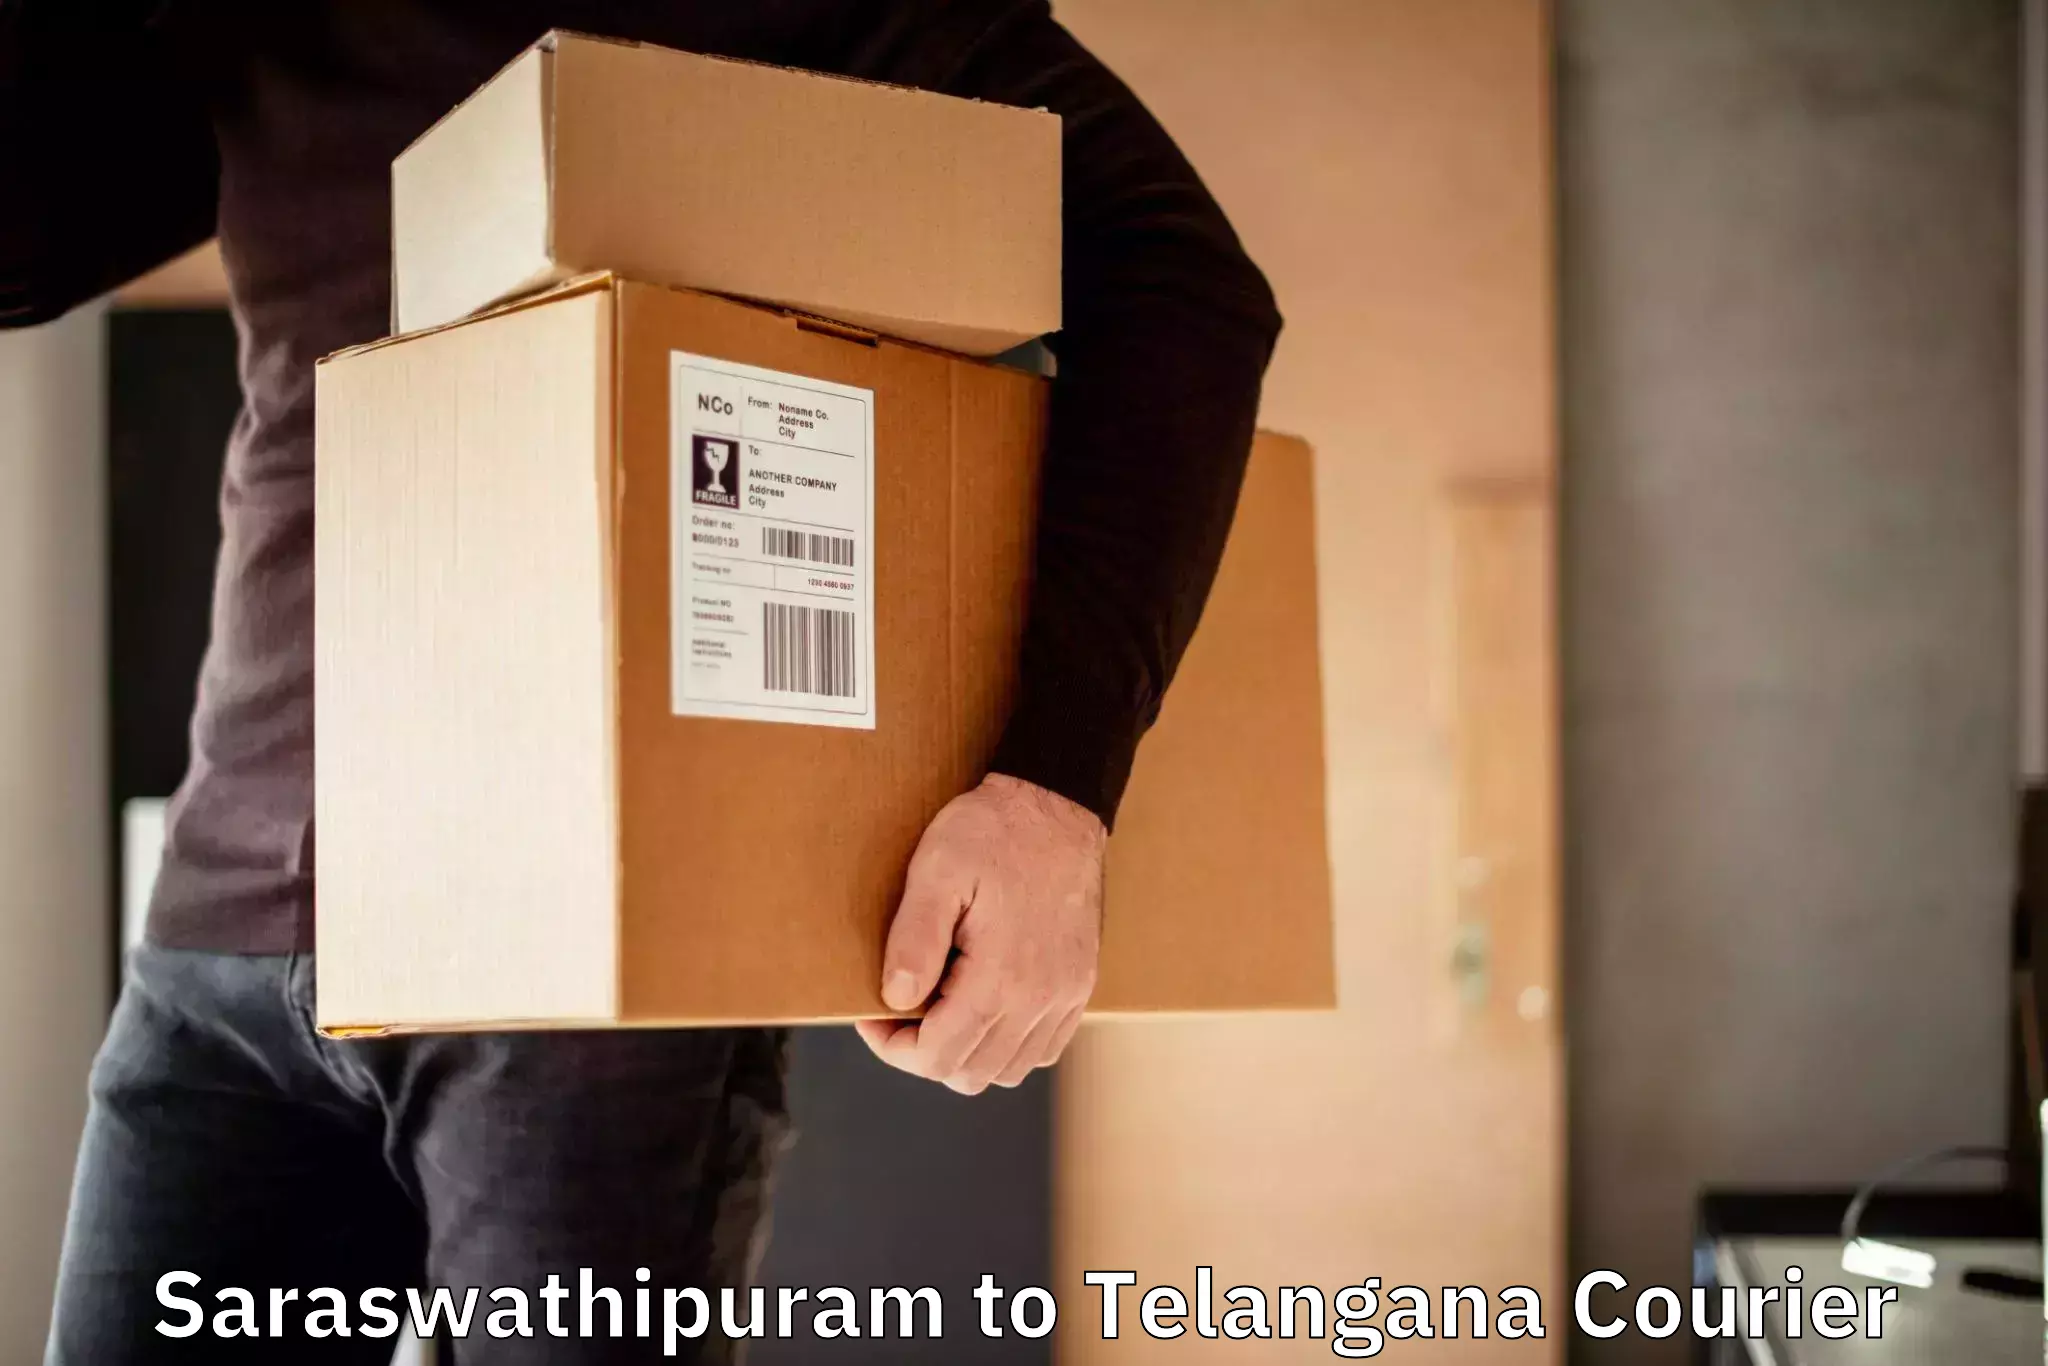 Domestic courier Saraswathipuram to Telangana